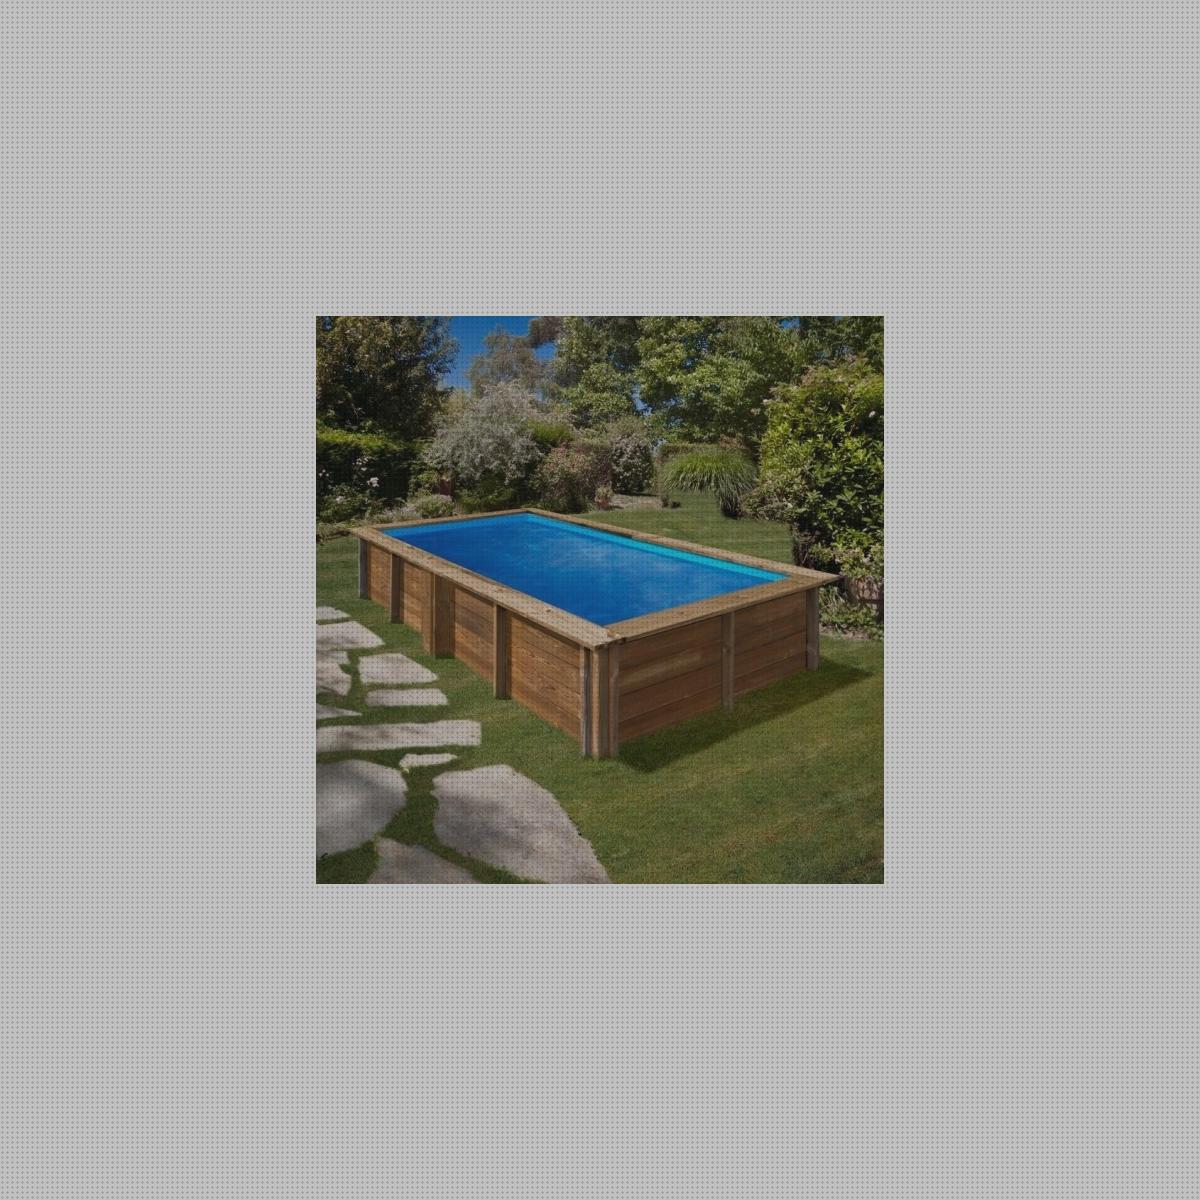 ¿Dónde poder comprar maderas piscinas piscina de madera desmontable rectangular?